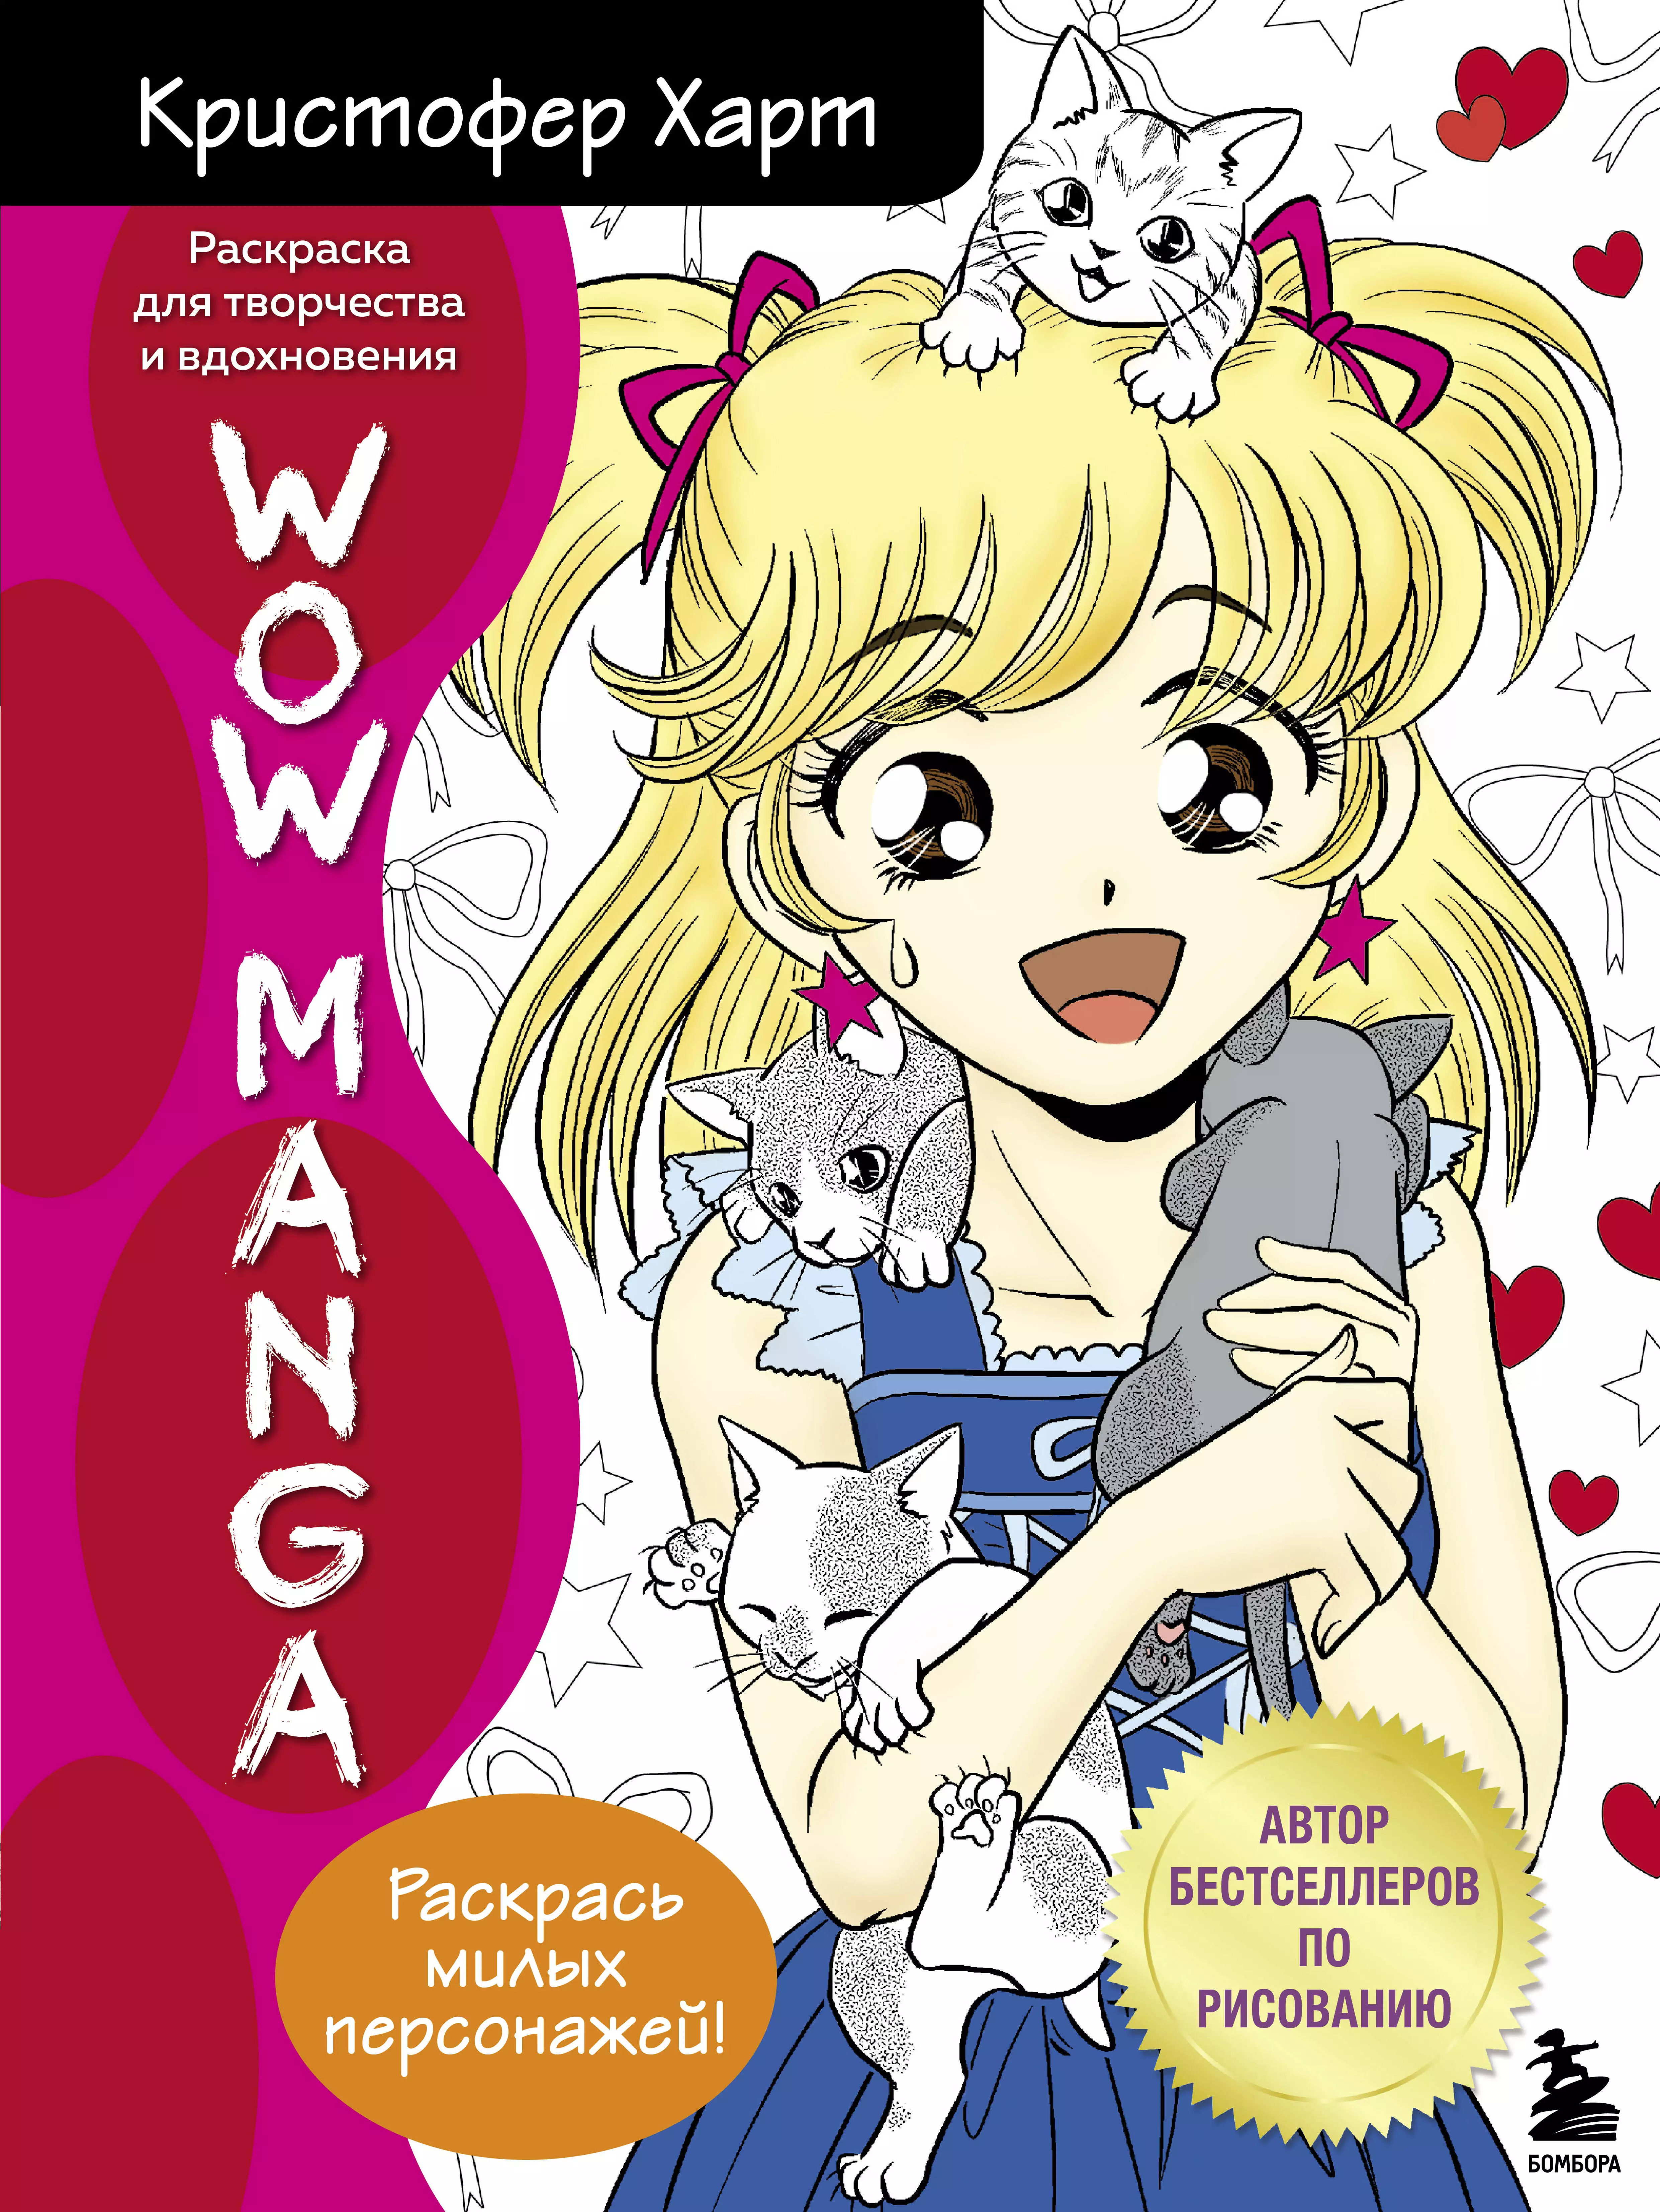 кристофер харт wow manga раскраска для творчества и вдохновения WOW MANGA. Раскраска для творчества и вдохновения